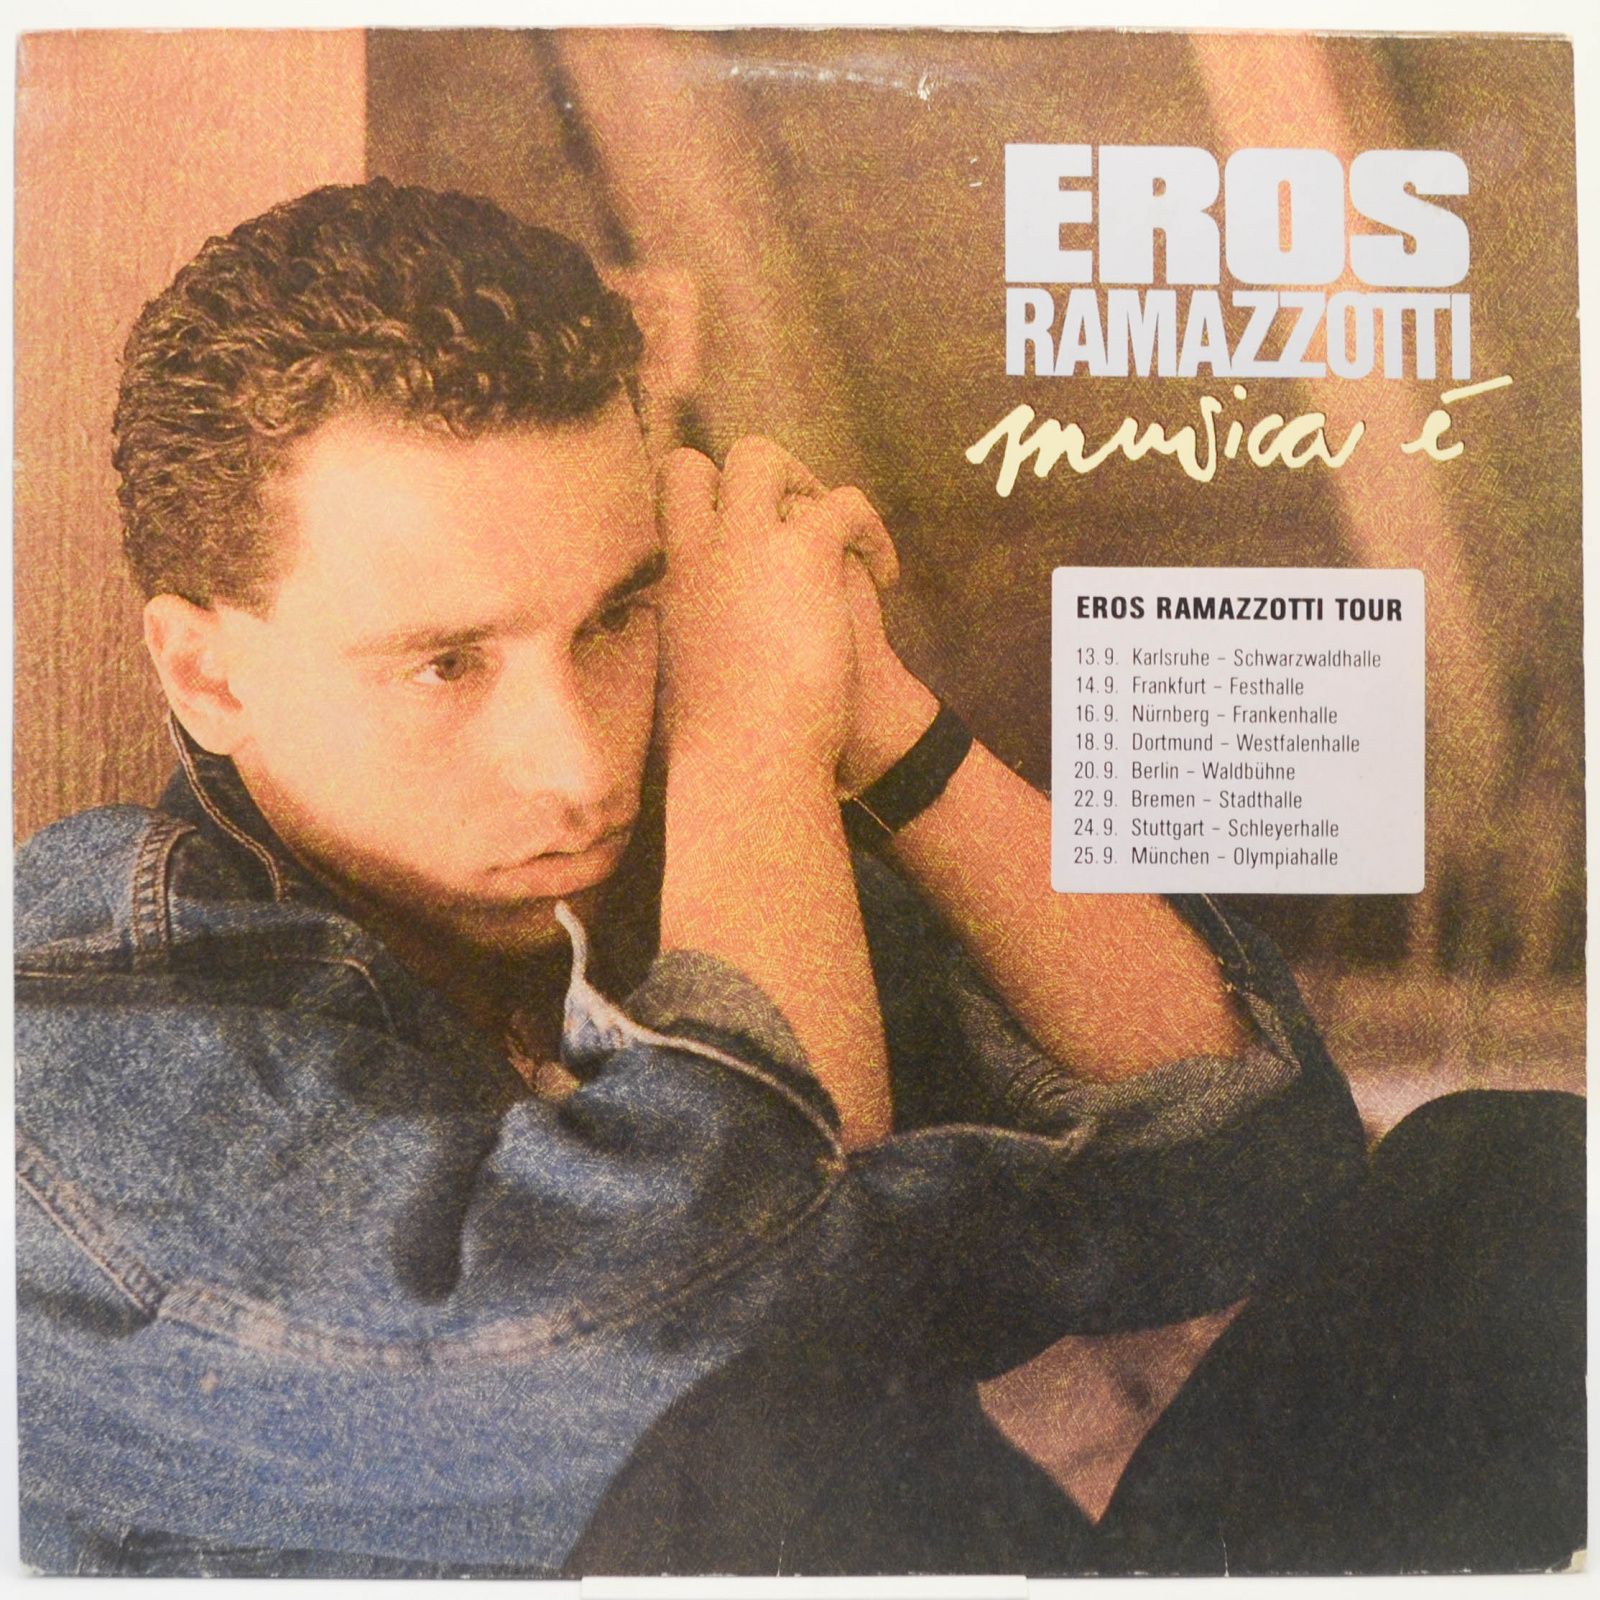 Eros Ramazzotti — Musica È, 1988